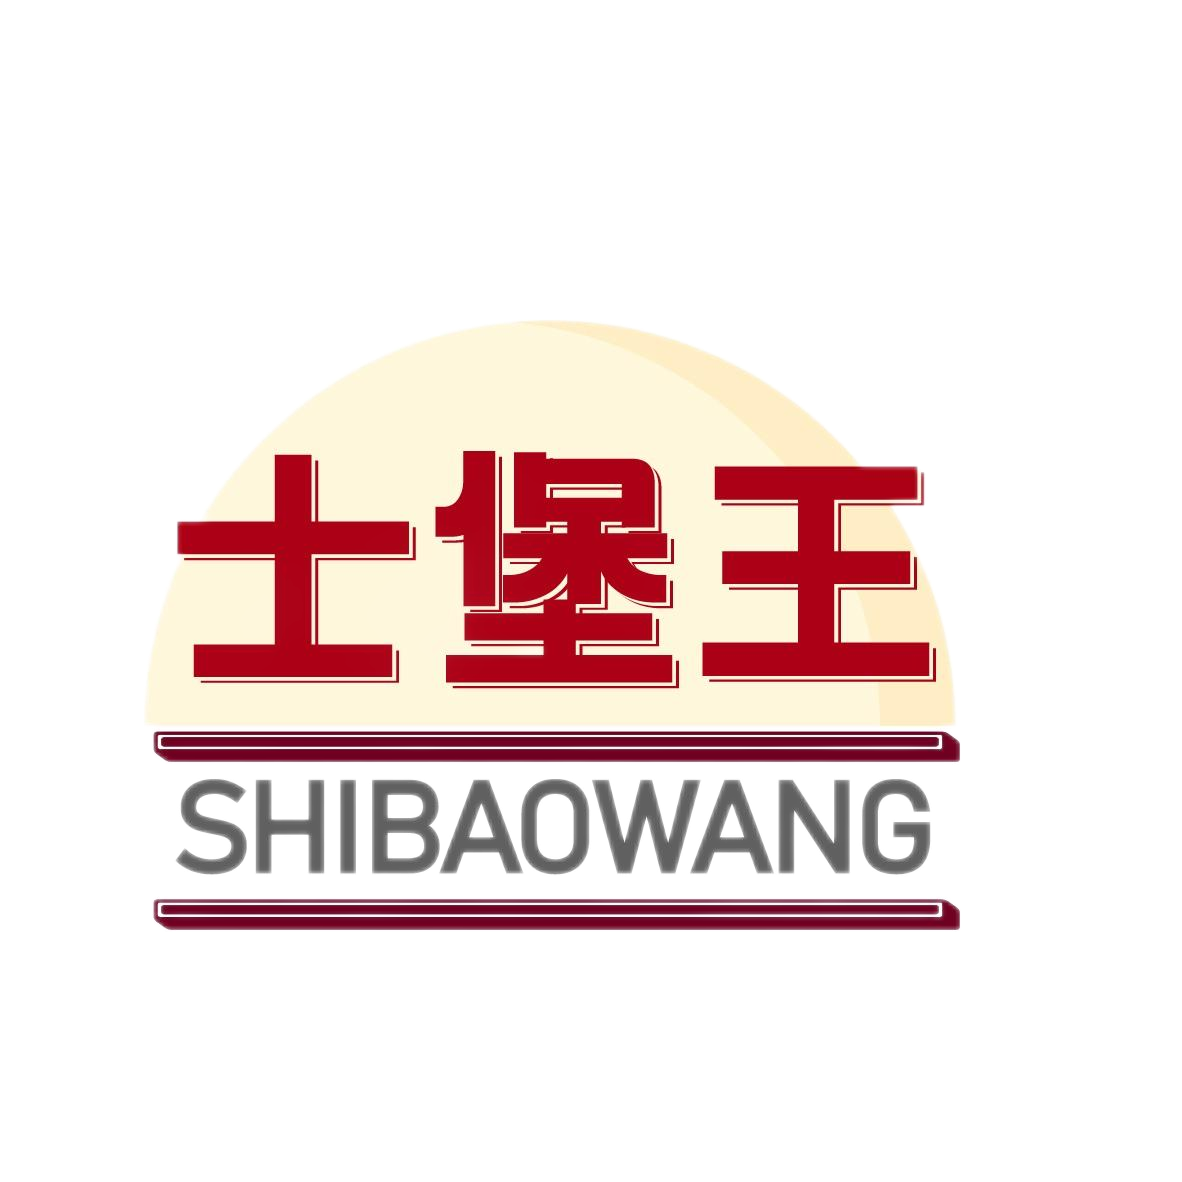 士堡王
SHIBAOWANG